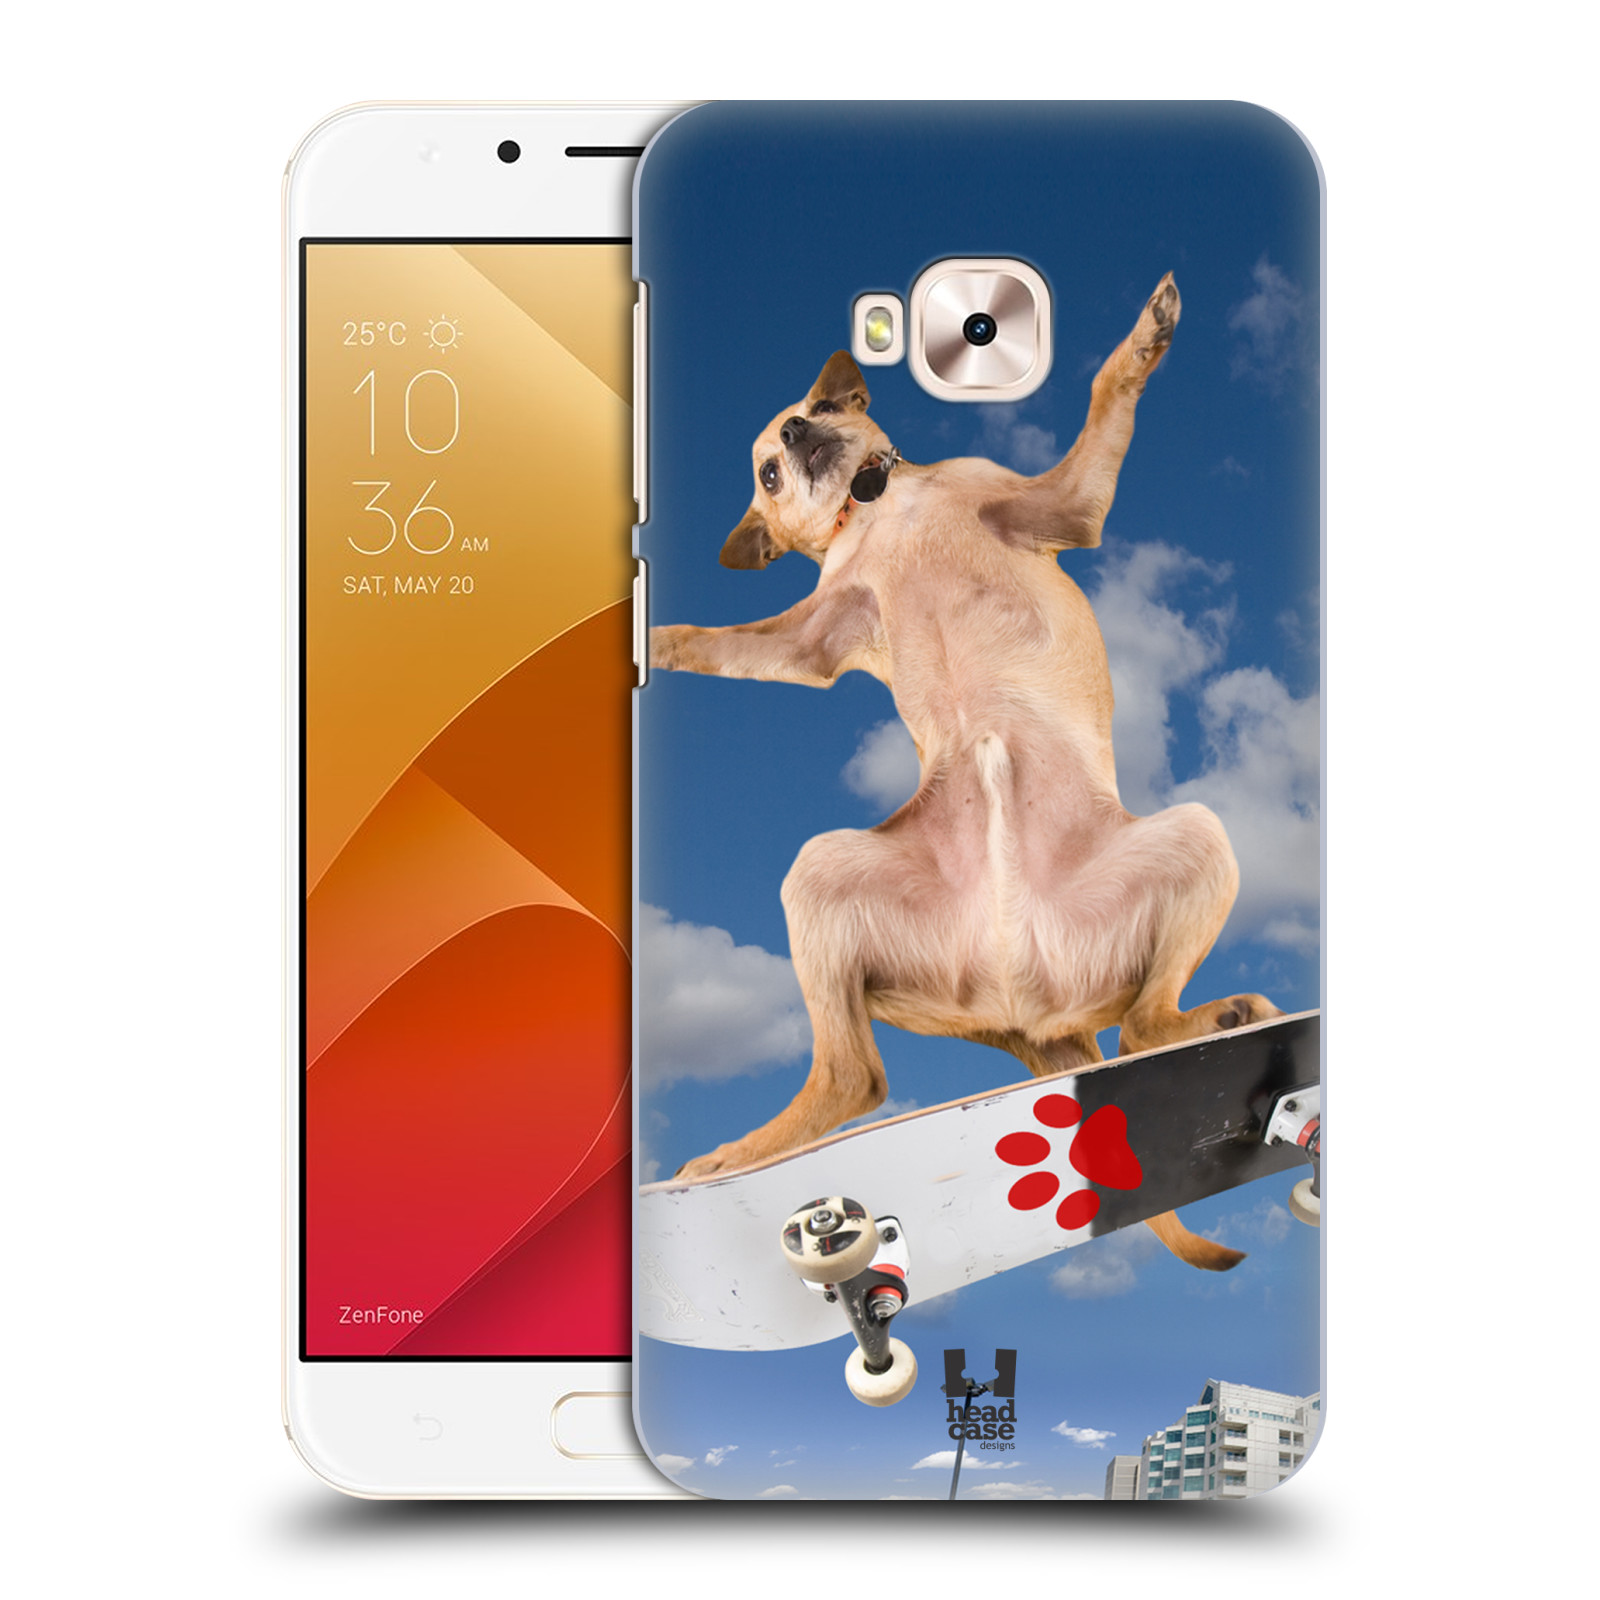 HEAD CASE plastový obal na mobil Asus Zenfone 4 Selfie Pro ZD552KL vzor Legrační zvířátka pejsek skateboard